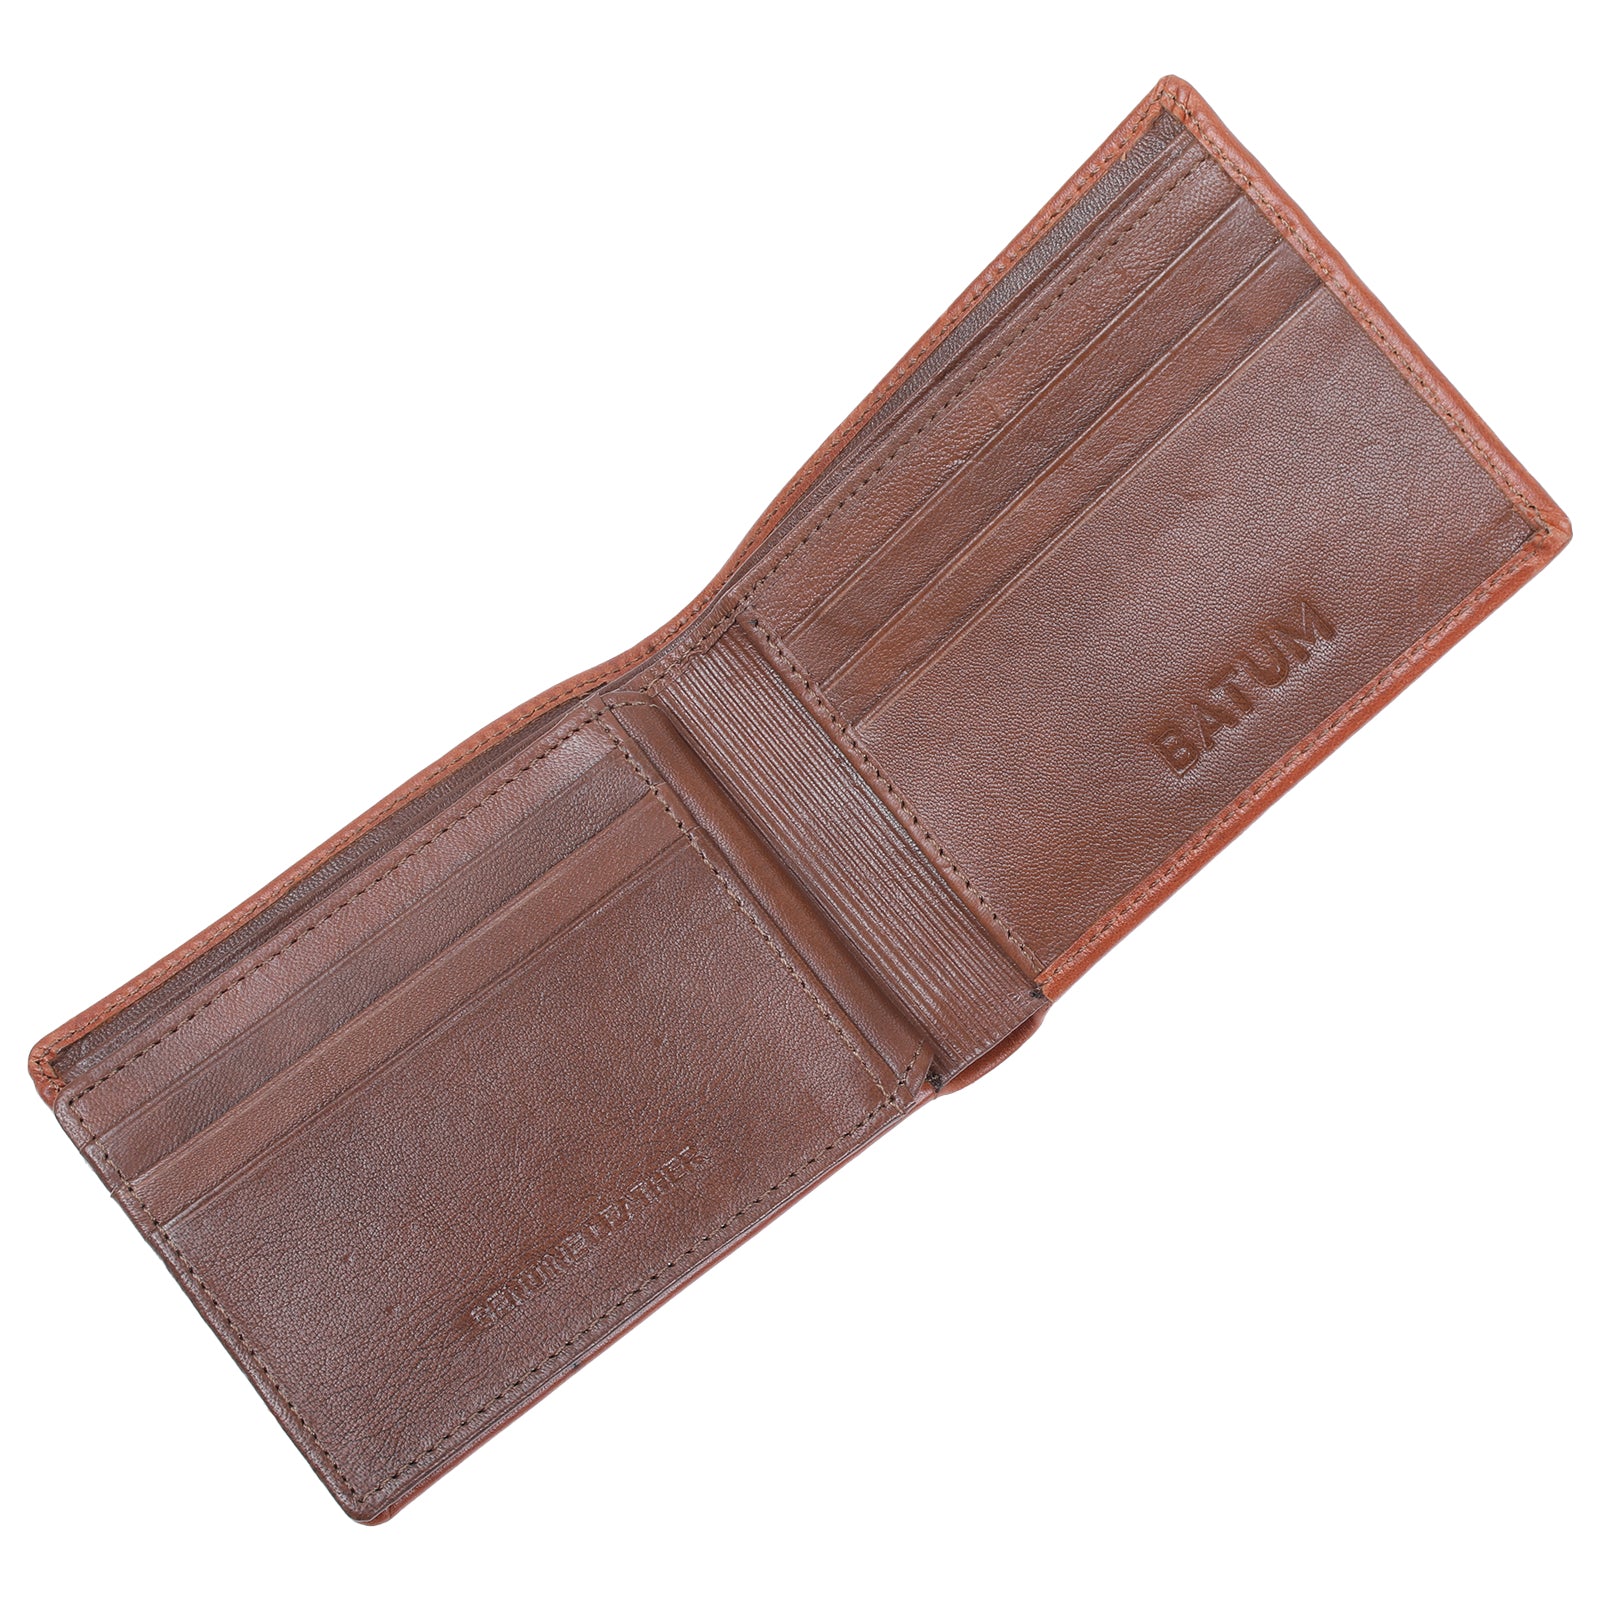 BATUM Meraki Leather Wallets for Men